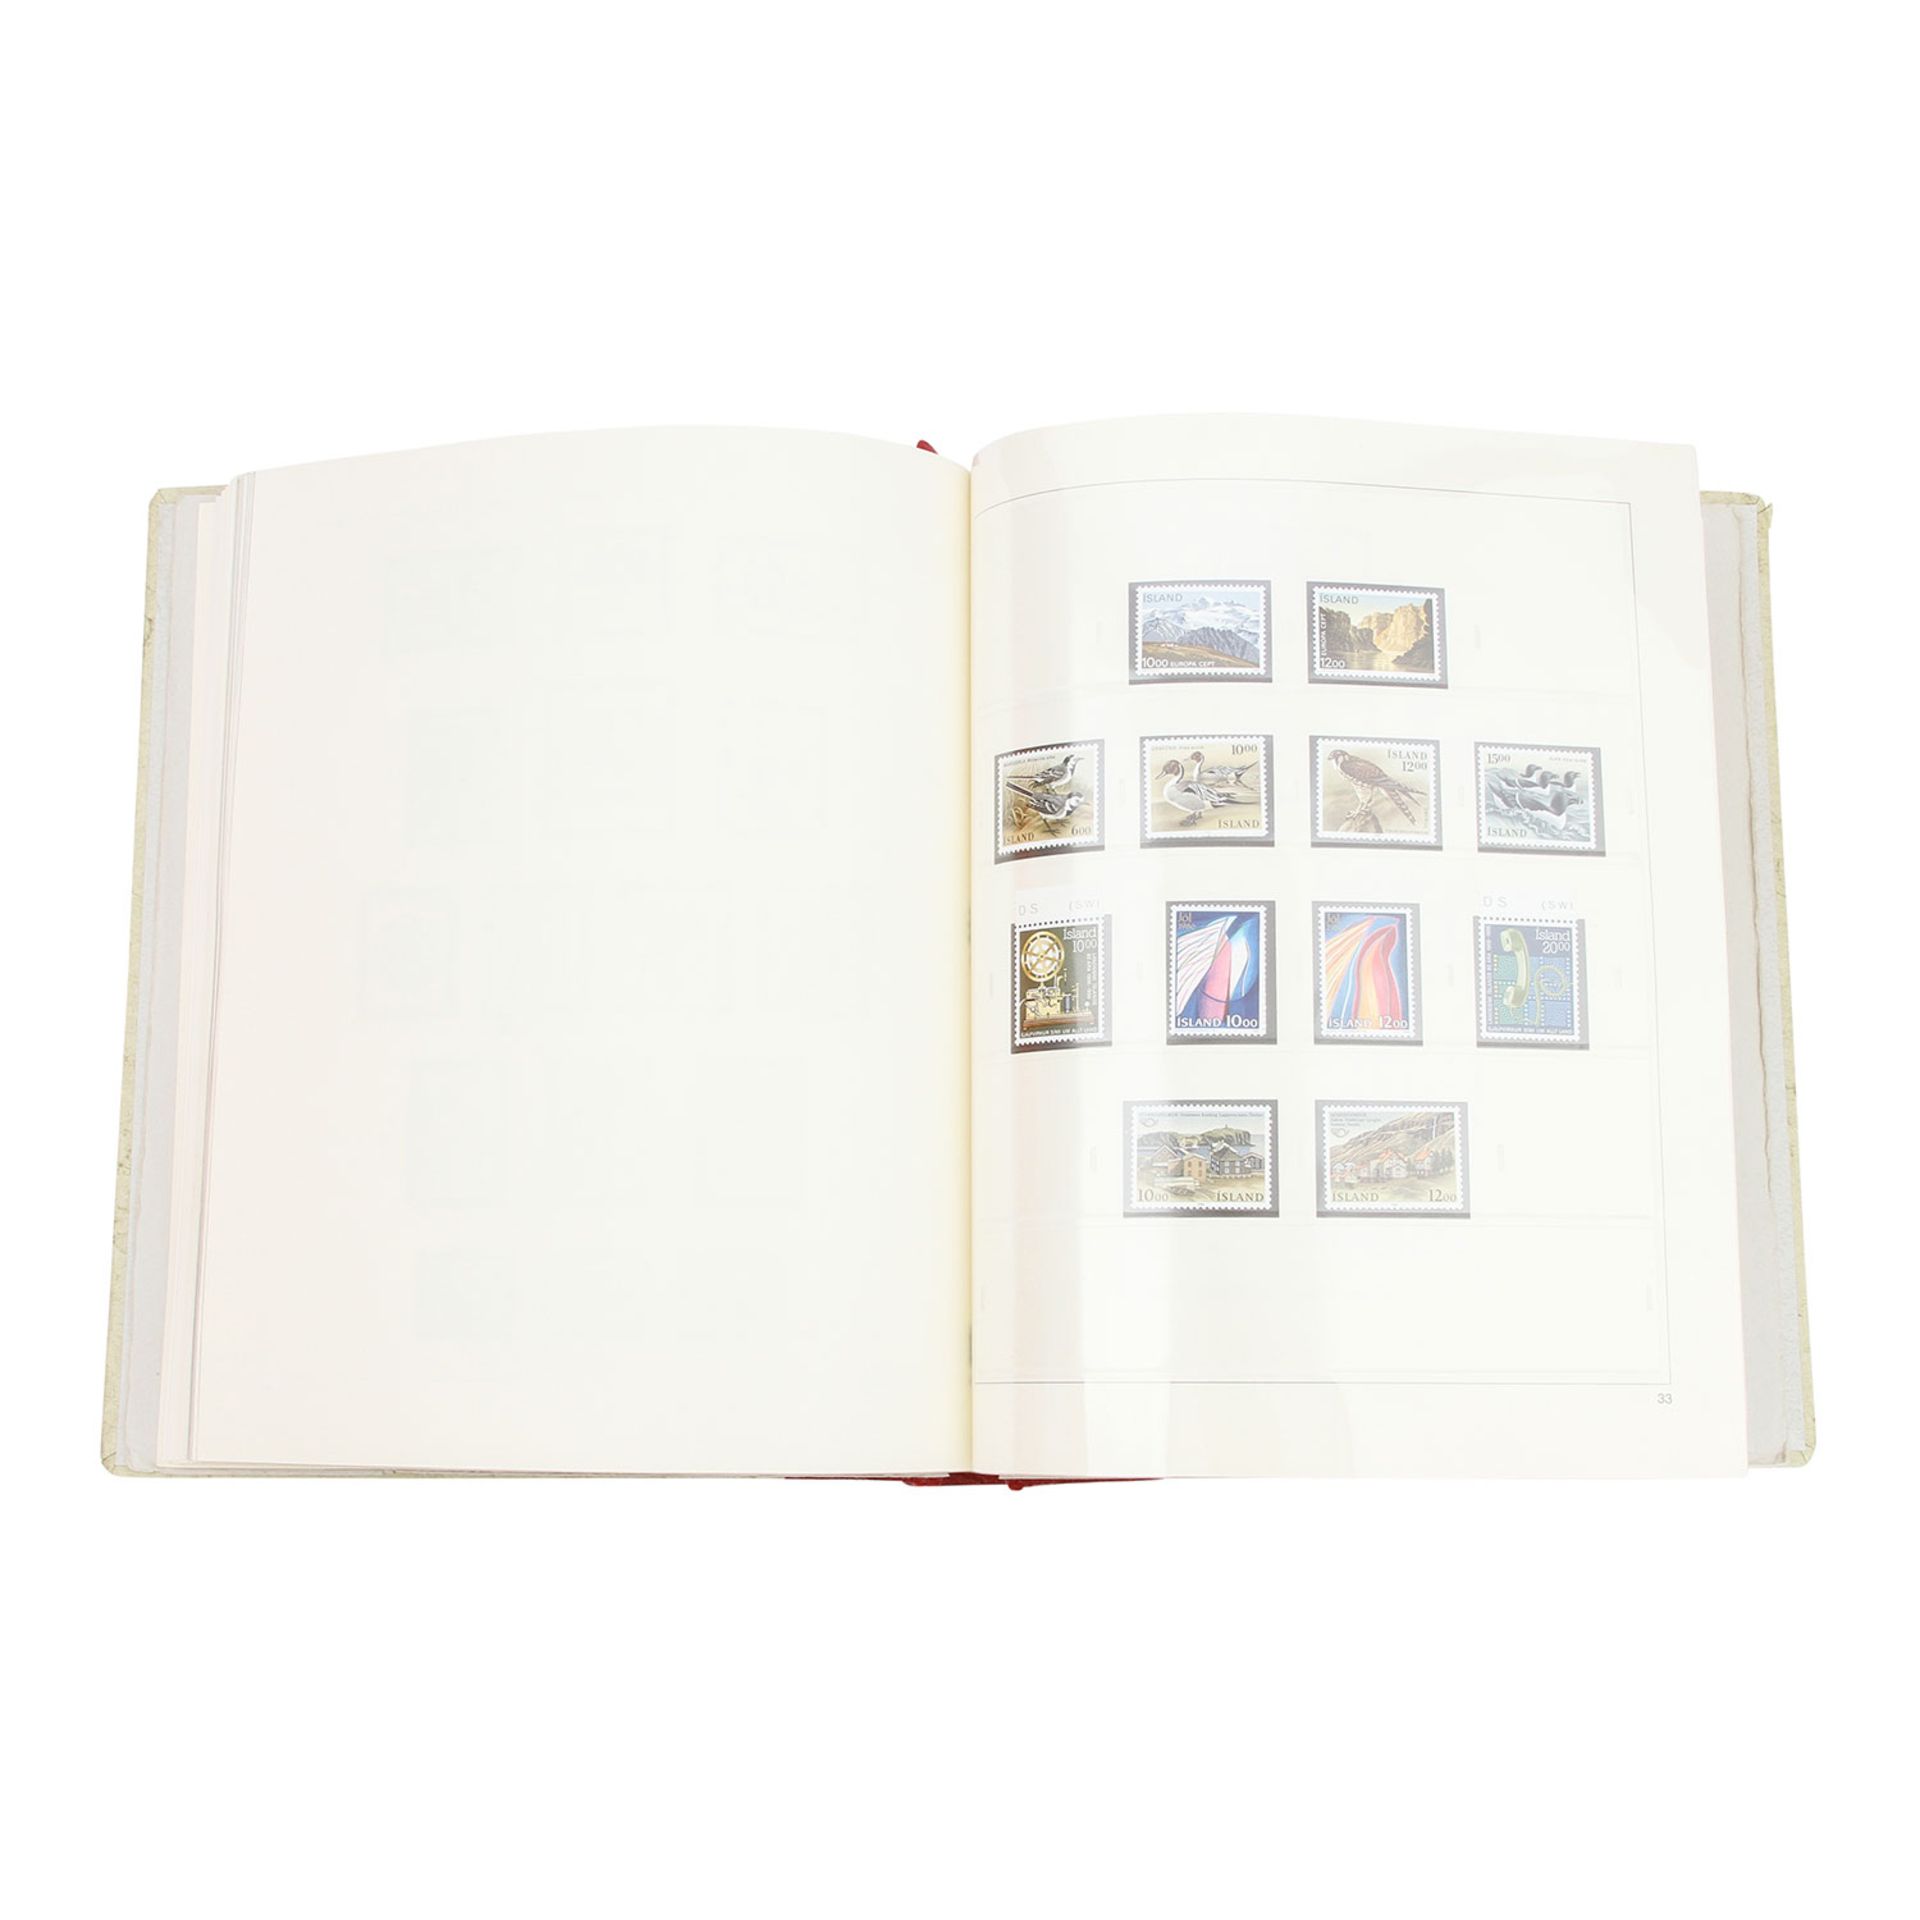 Island – Komplette postfrische Sammlung von 1861/62-1993,im Kabe Klemmbinder auf Safe